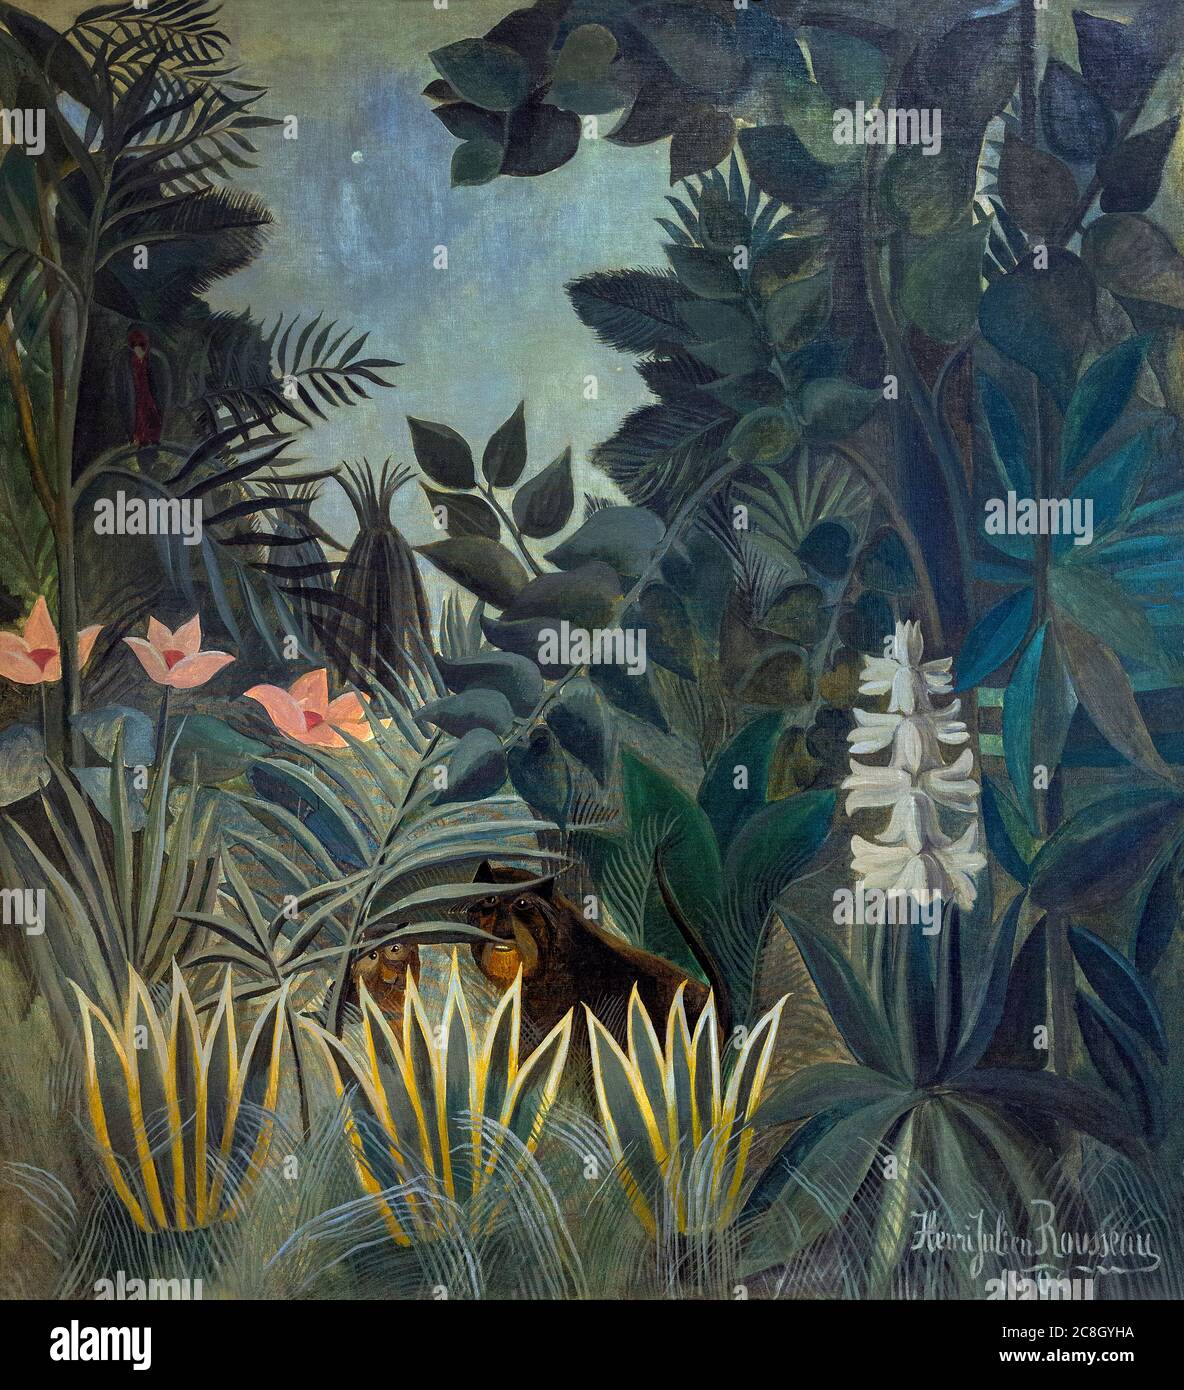 La Jungle équatoriale, Henri Rousseau, 1909, National Gallery of Art, Washington DC, USA, Amérique du Nord Banque D'Images